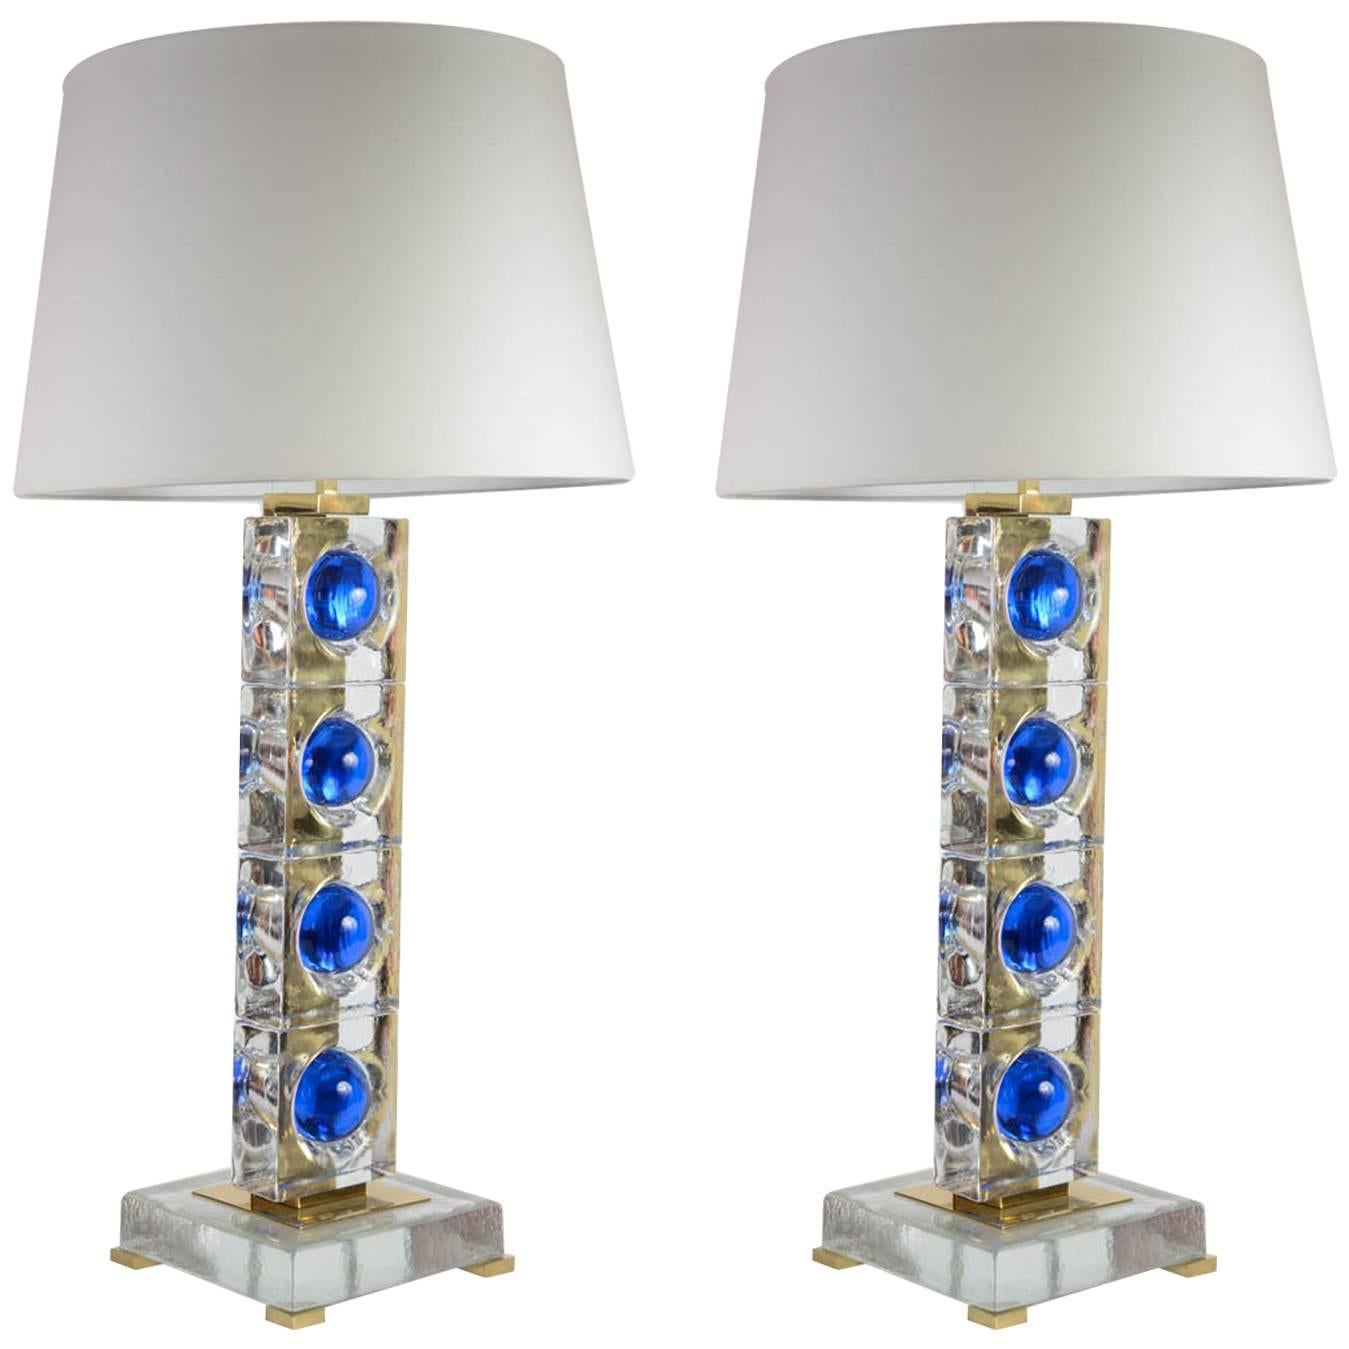 Pair of Murano Glass Lamps Designed by Juanluca Fontana